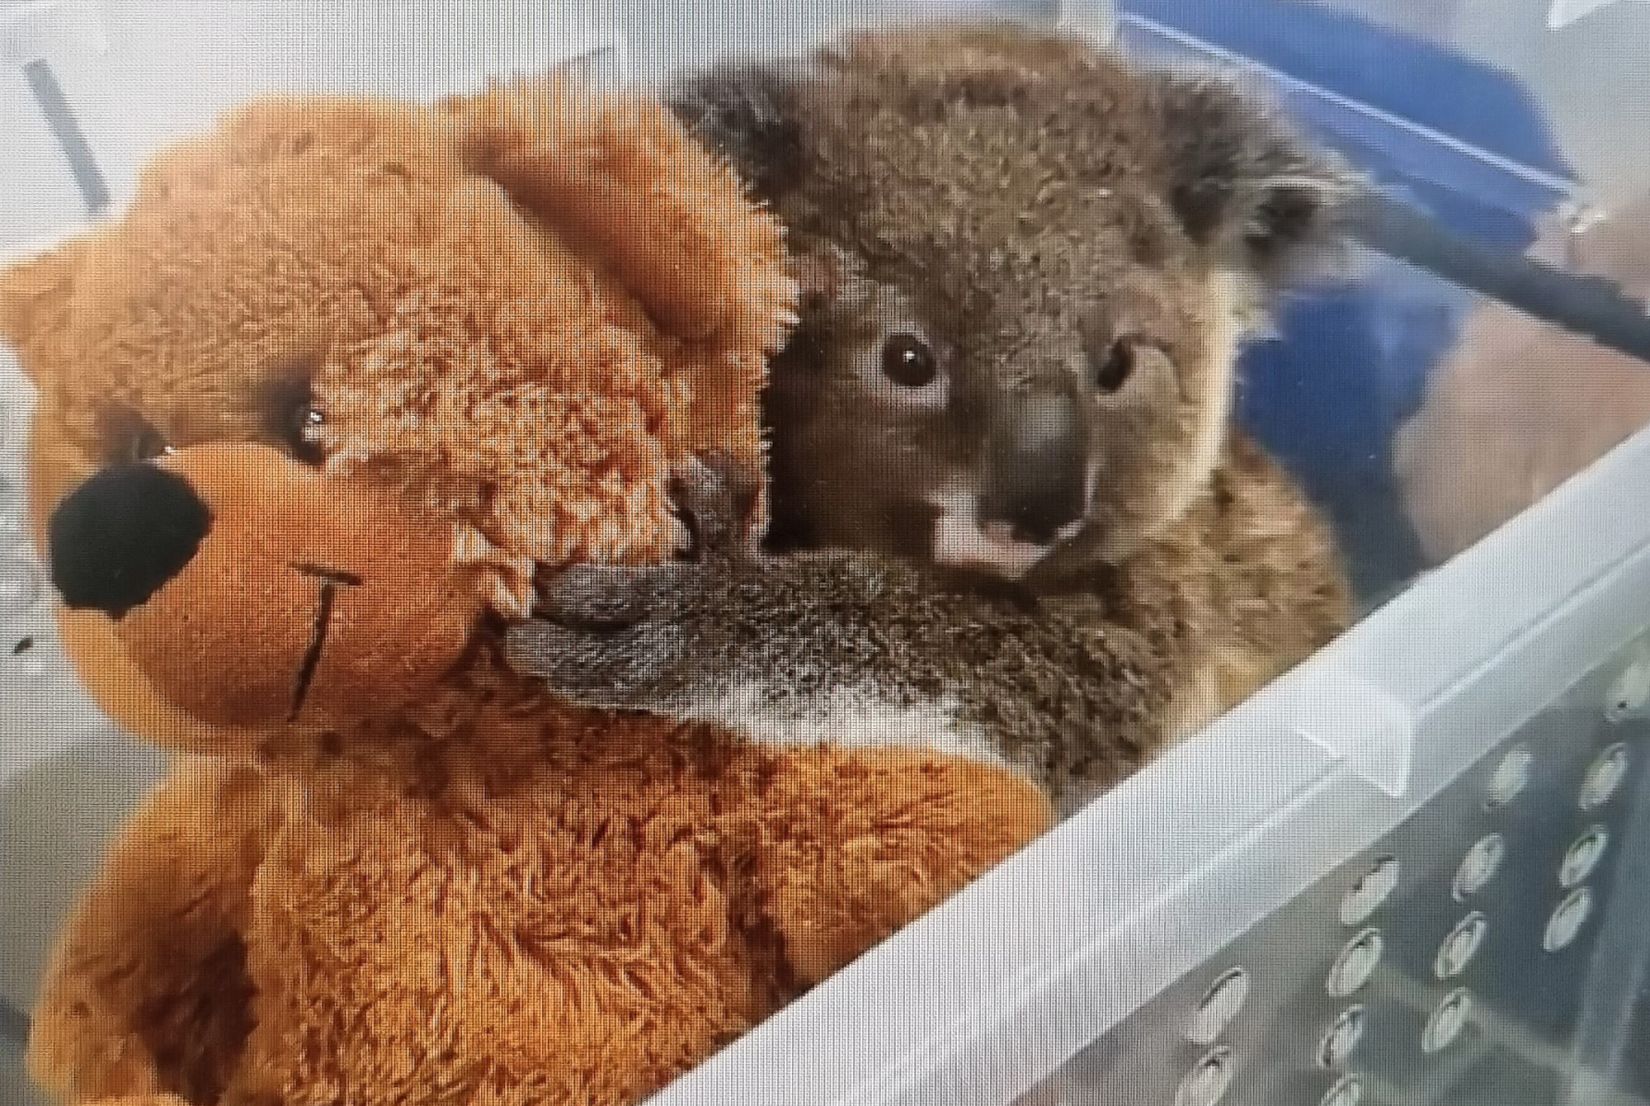 Koala with teddy bear